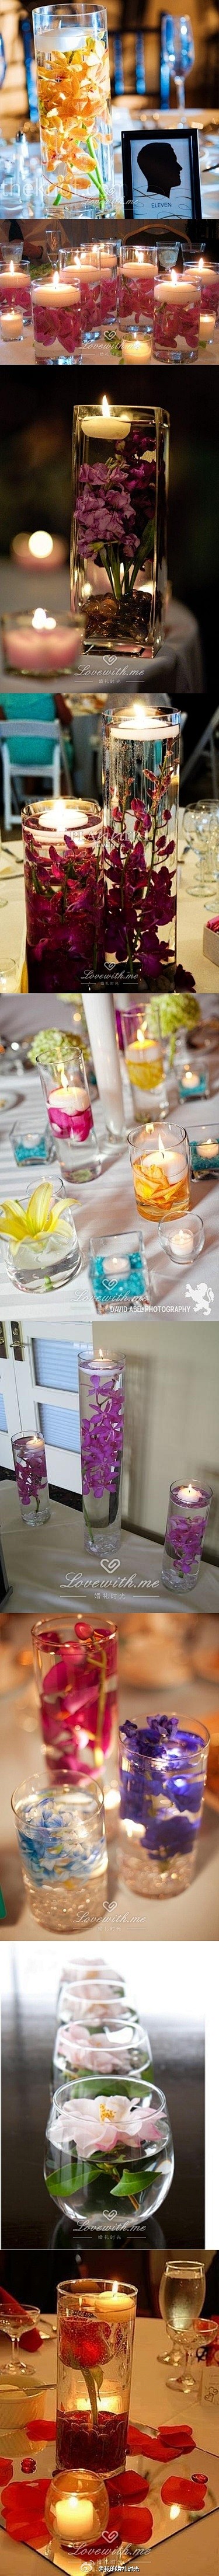 #婚礼布置# 浪漫的蜡烛和水中花布置灵感...